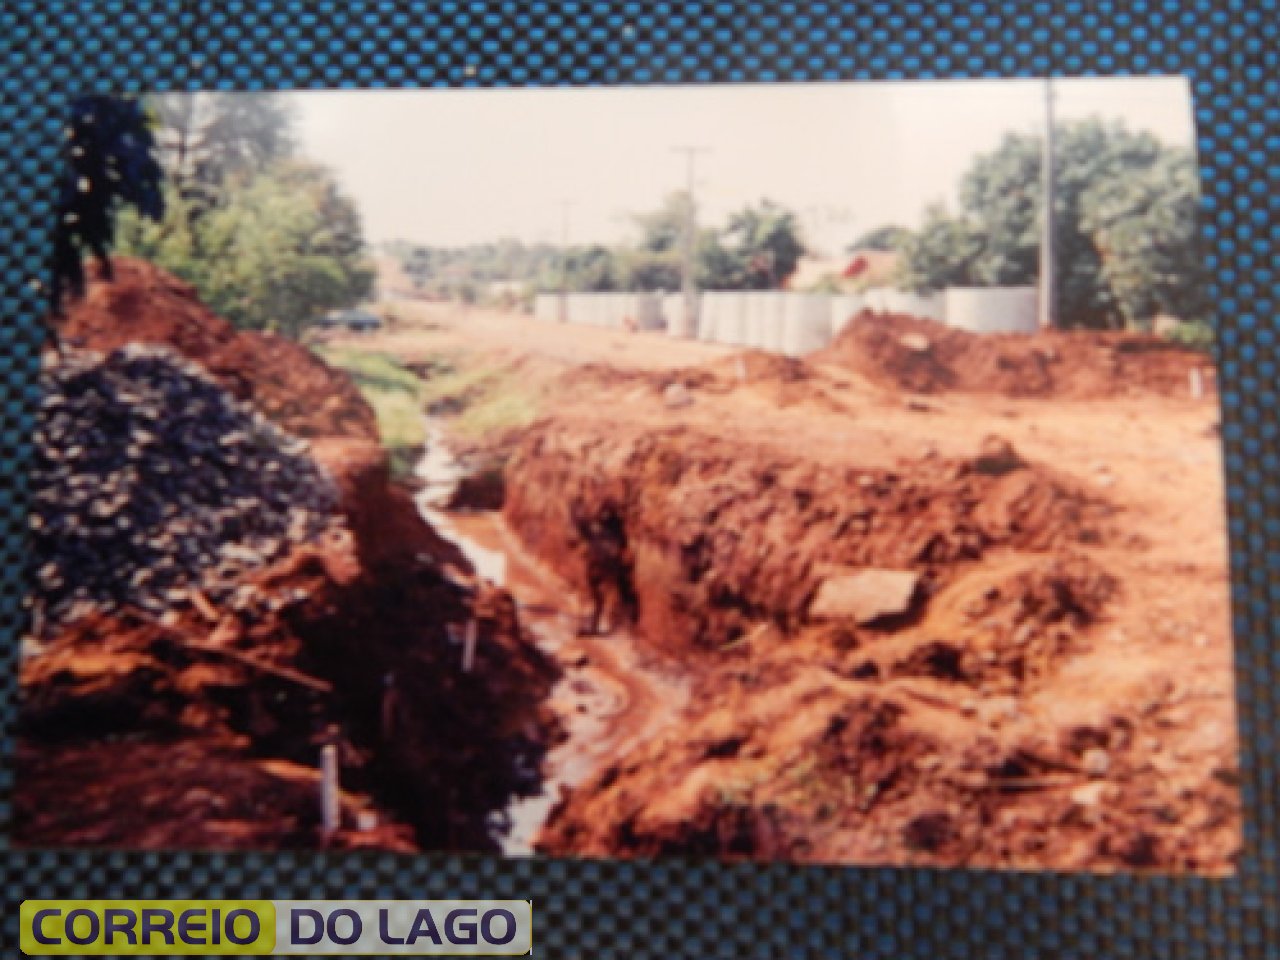 Bairro Vila Rica até a década de 1990 antes da canalização do Rio Santa Helena, que era chamado de Rio “Bostinha” em razão do despejo dos esgotos domésticos ao córrego pela população.